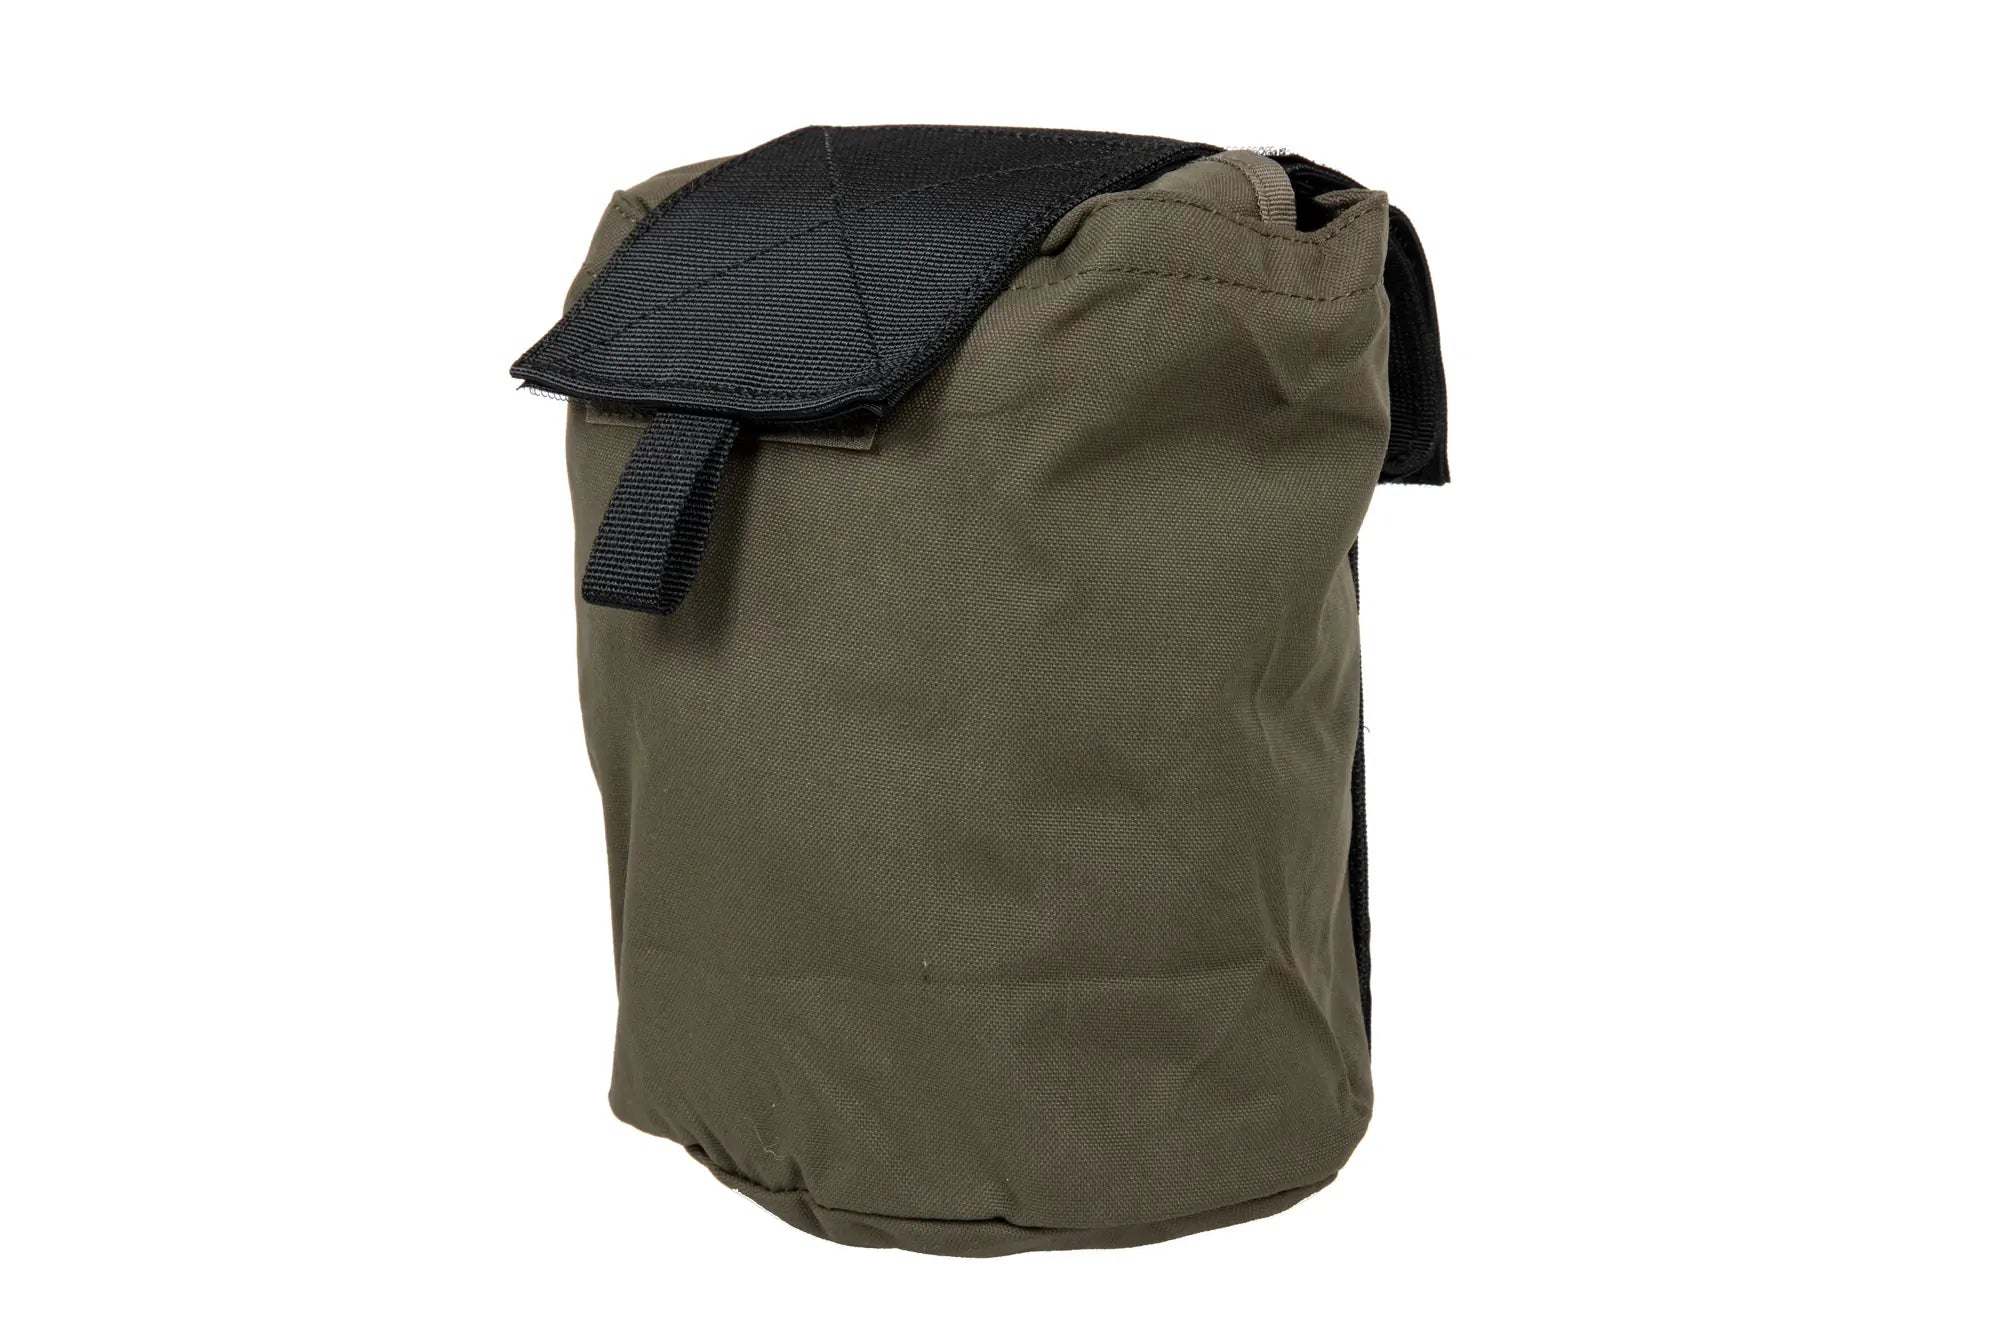 Tactical storage bag - Olive